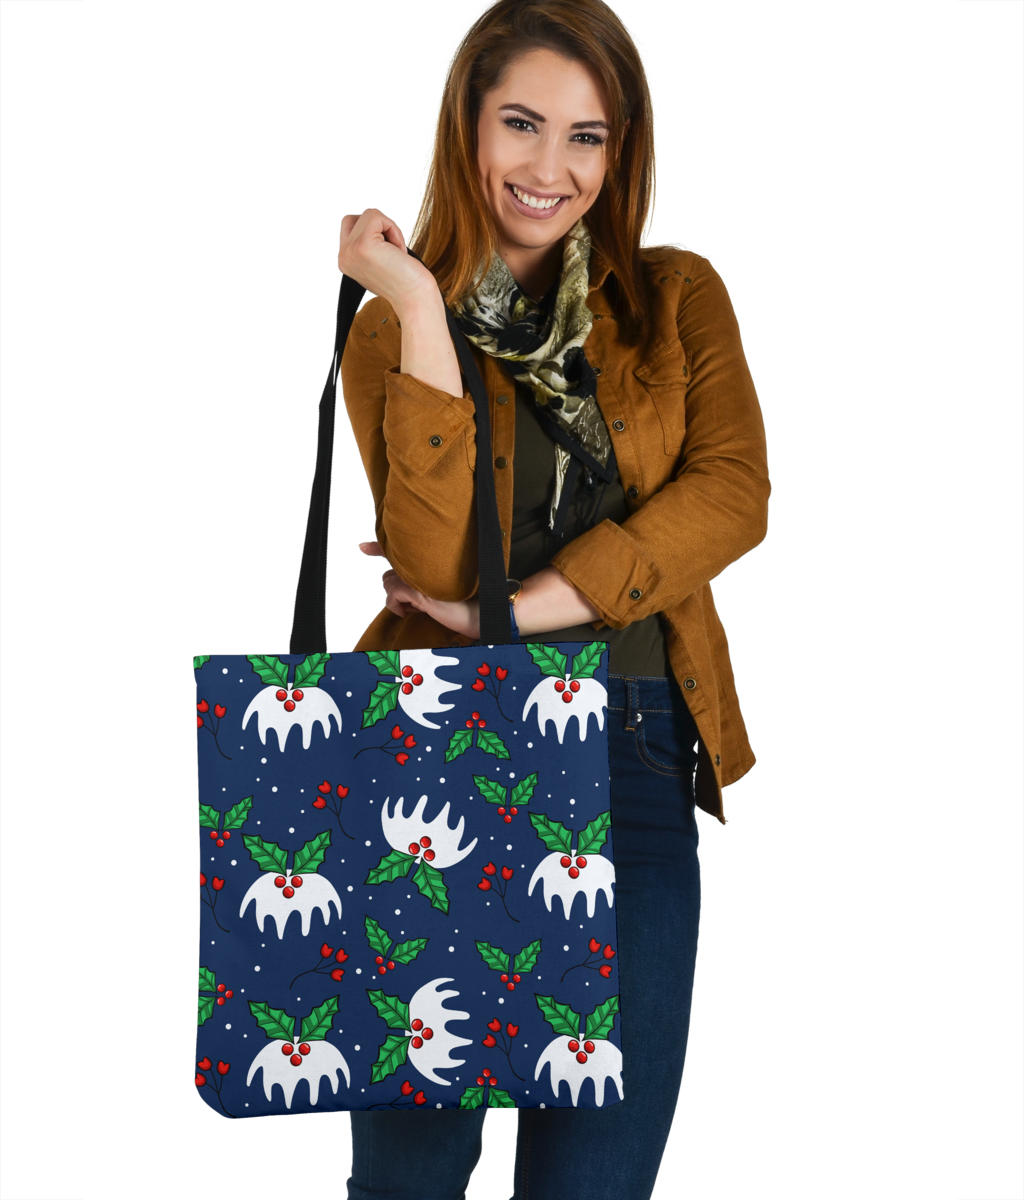 Snowy Mistletoe Linen Tote Bag